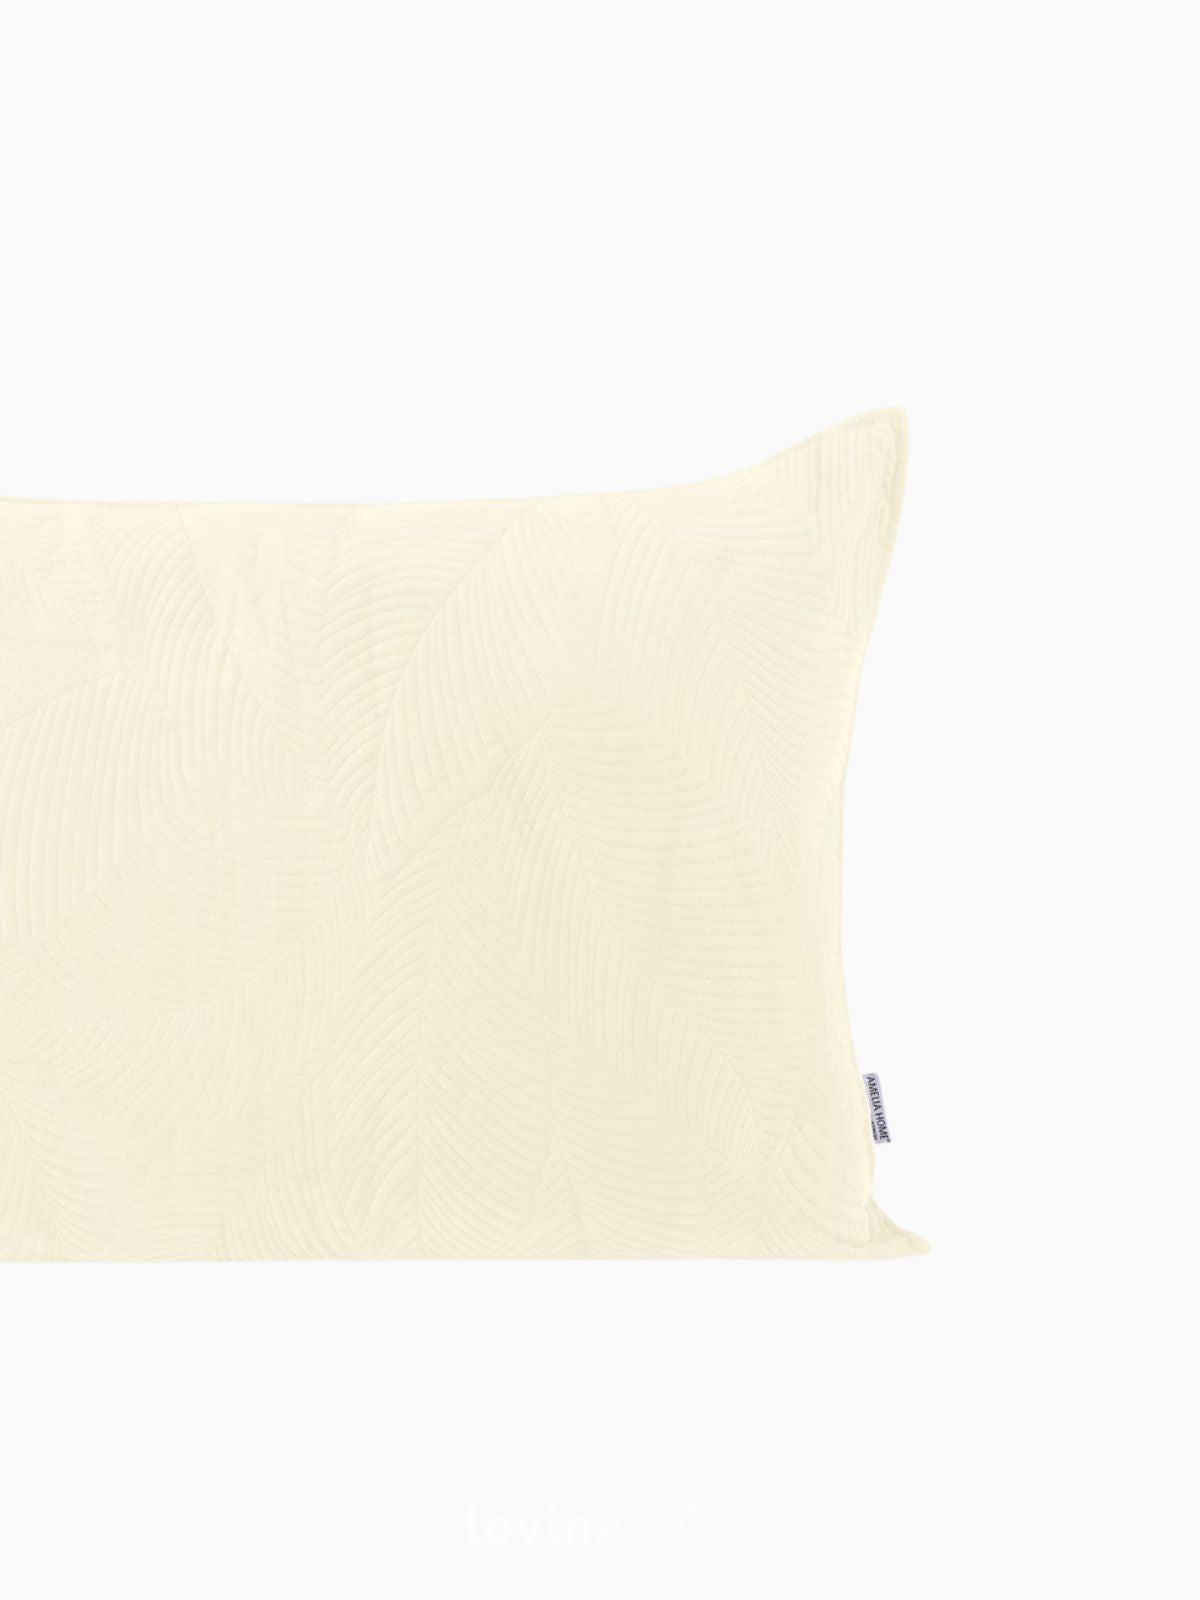 Cuscino decorativo in velluto Palsha, colore beige chiaro 50x70 cm.-3